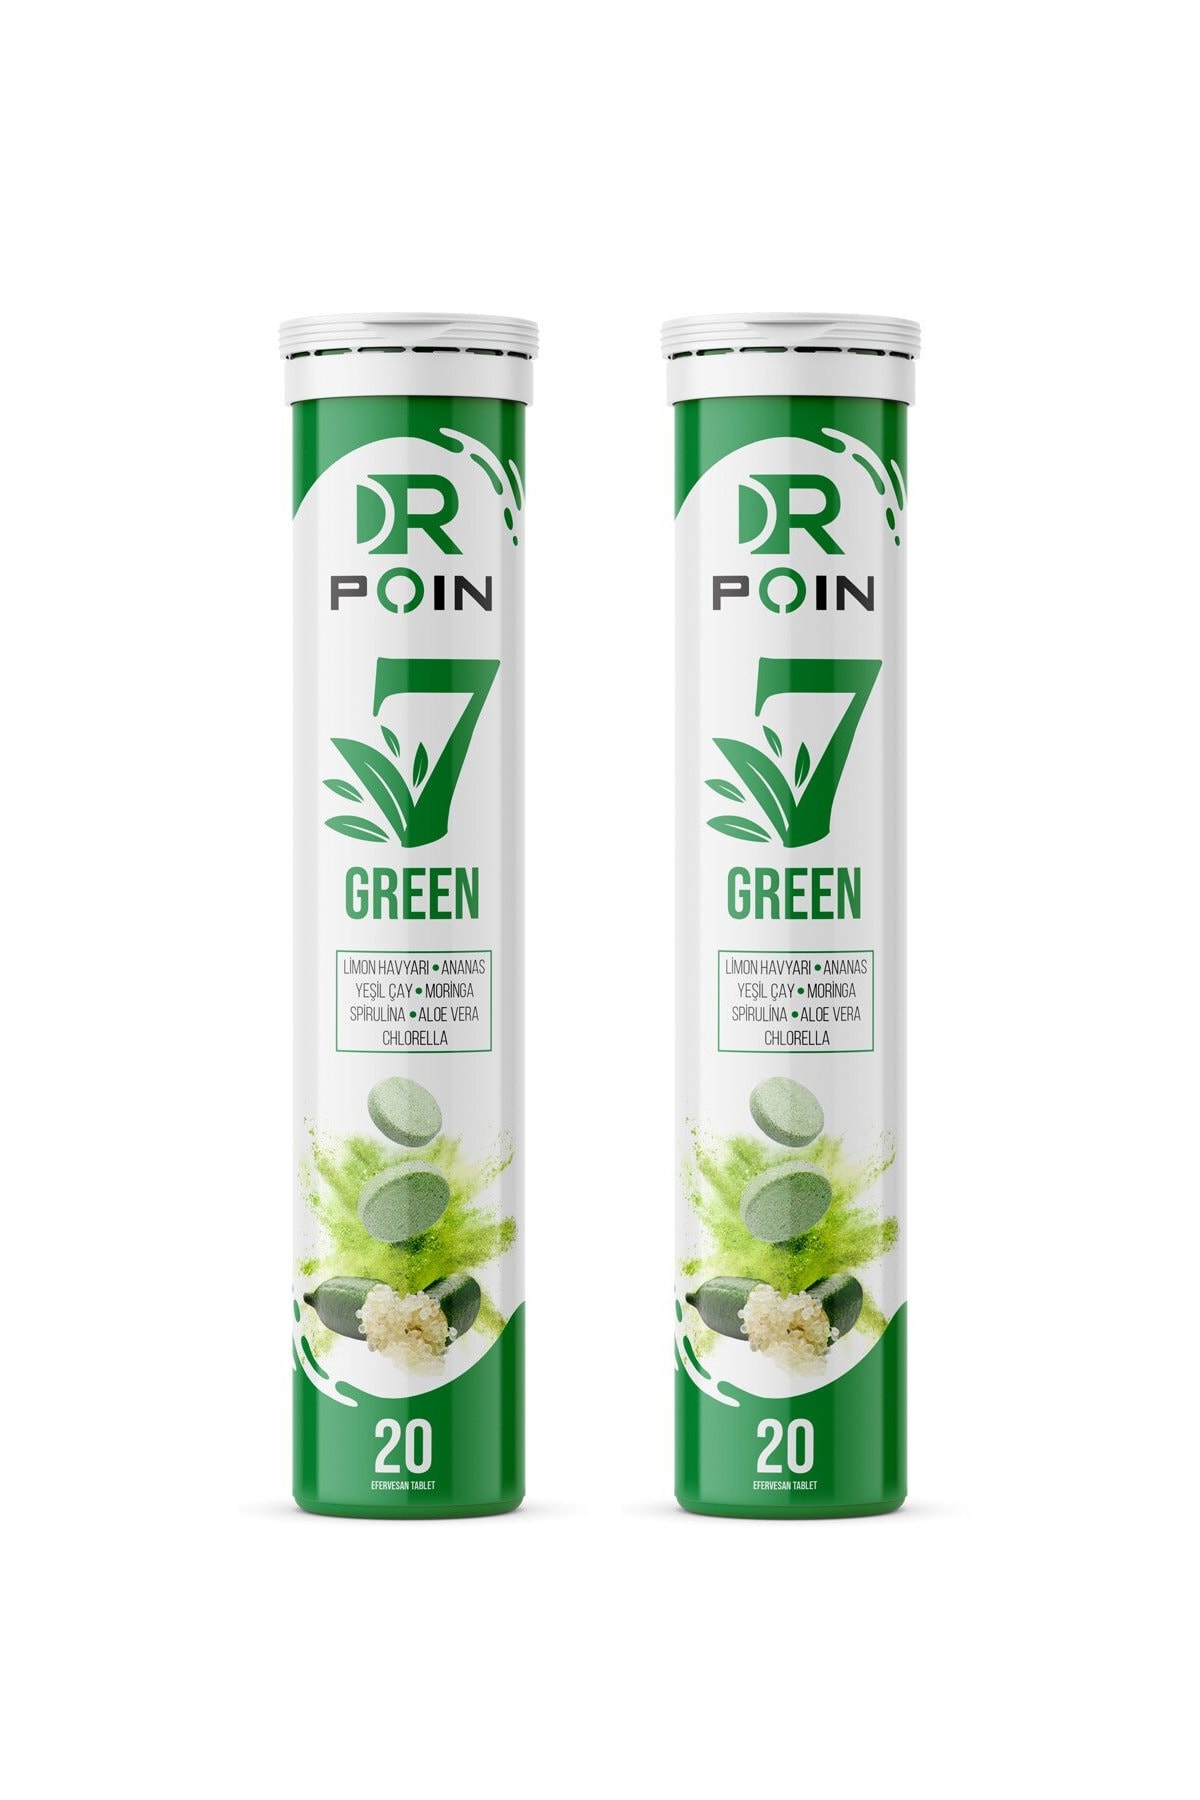 Dr Poin 7 Green Efervesan Tablet - 2 Adet